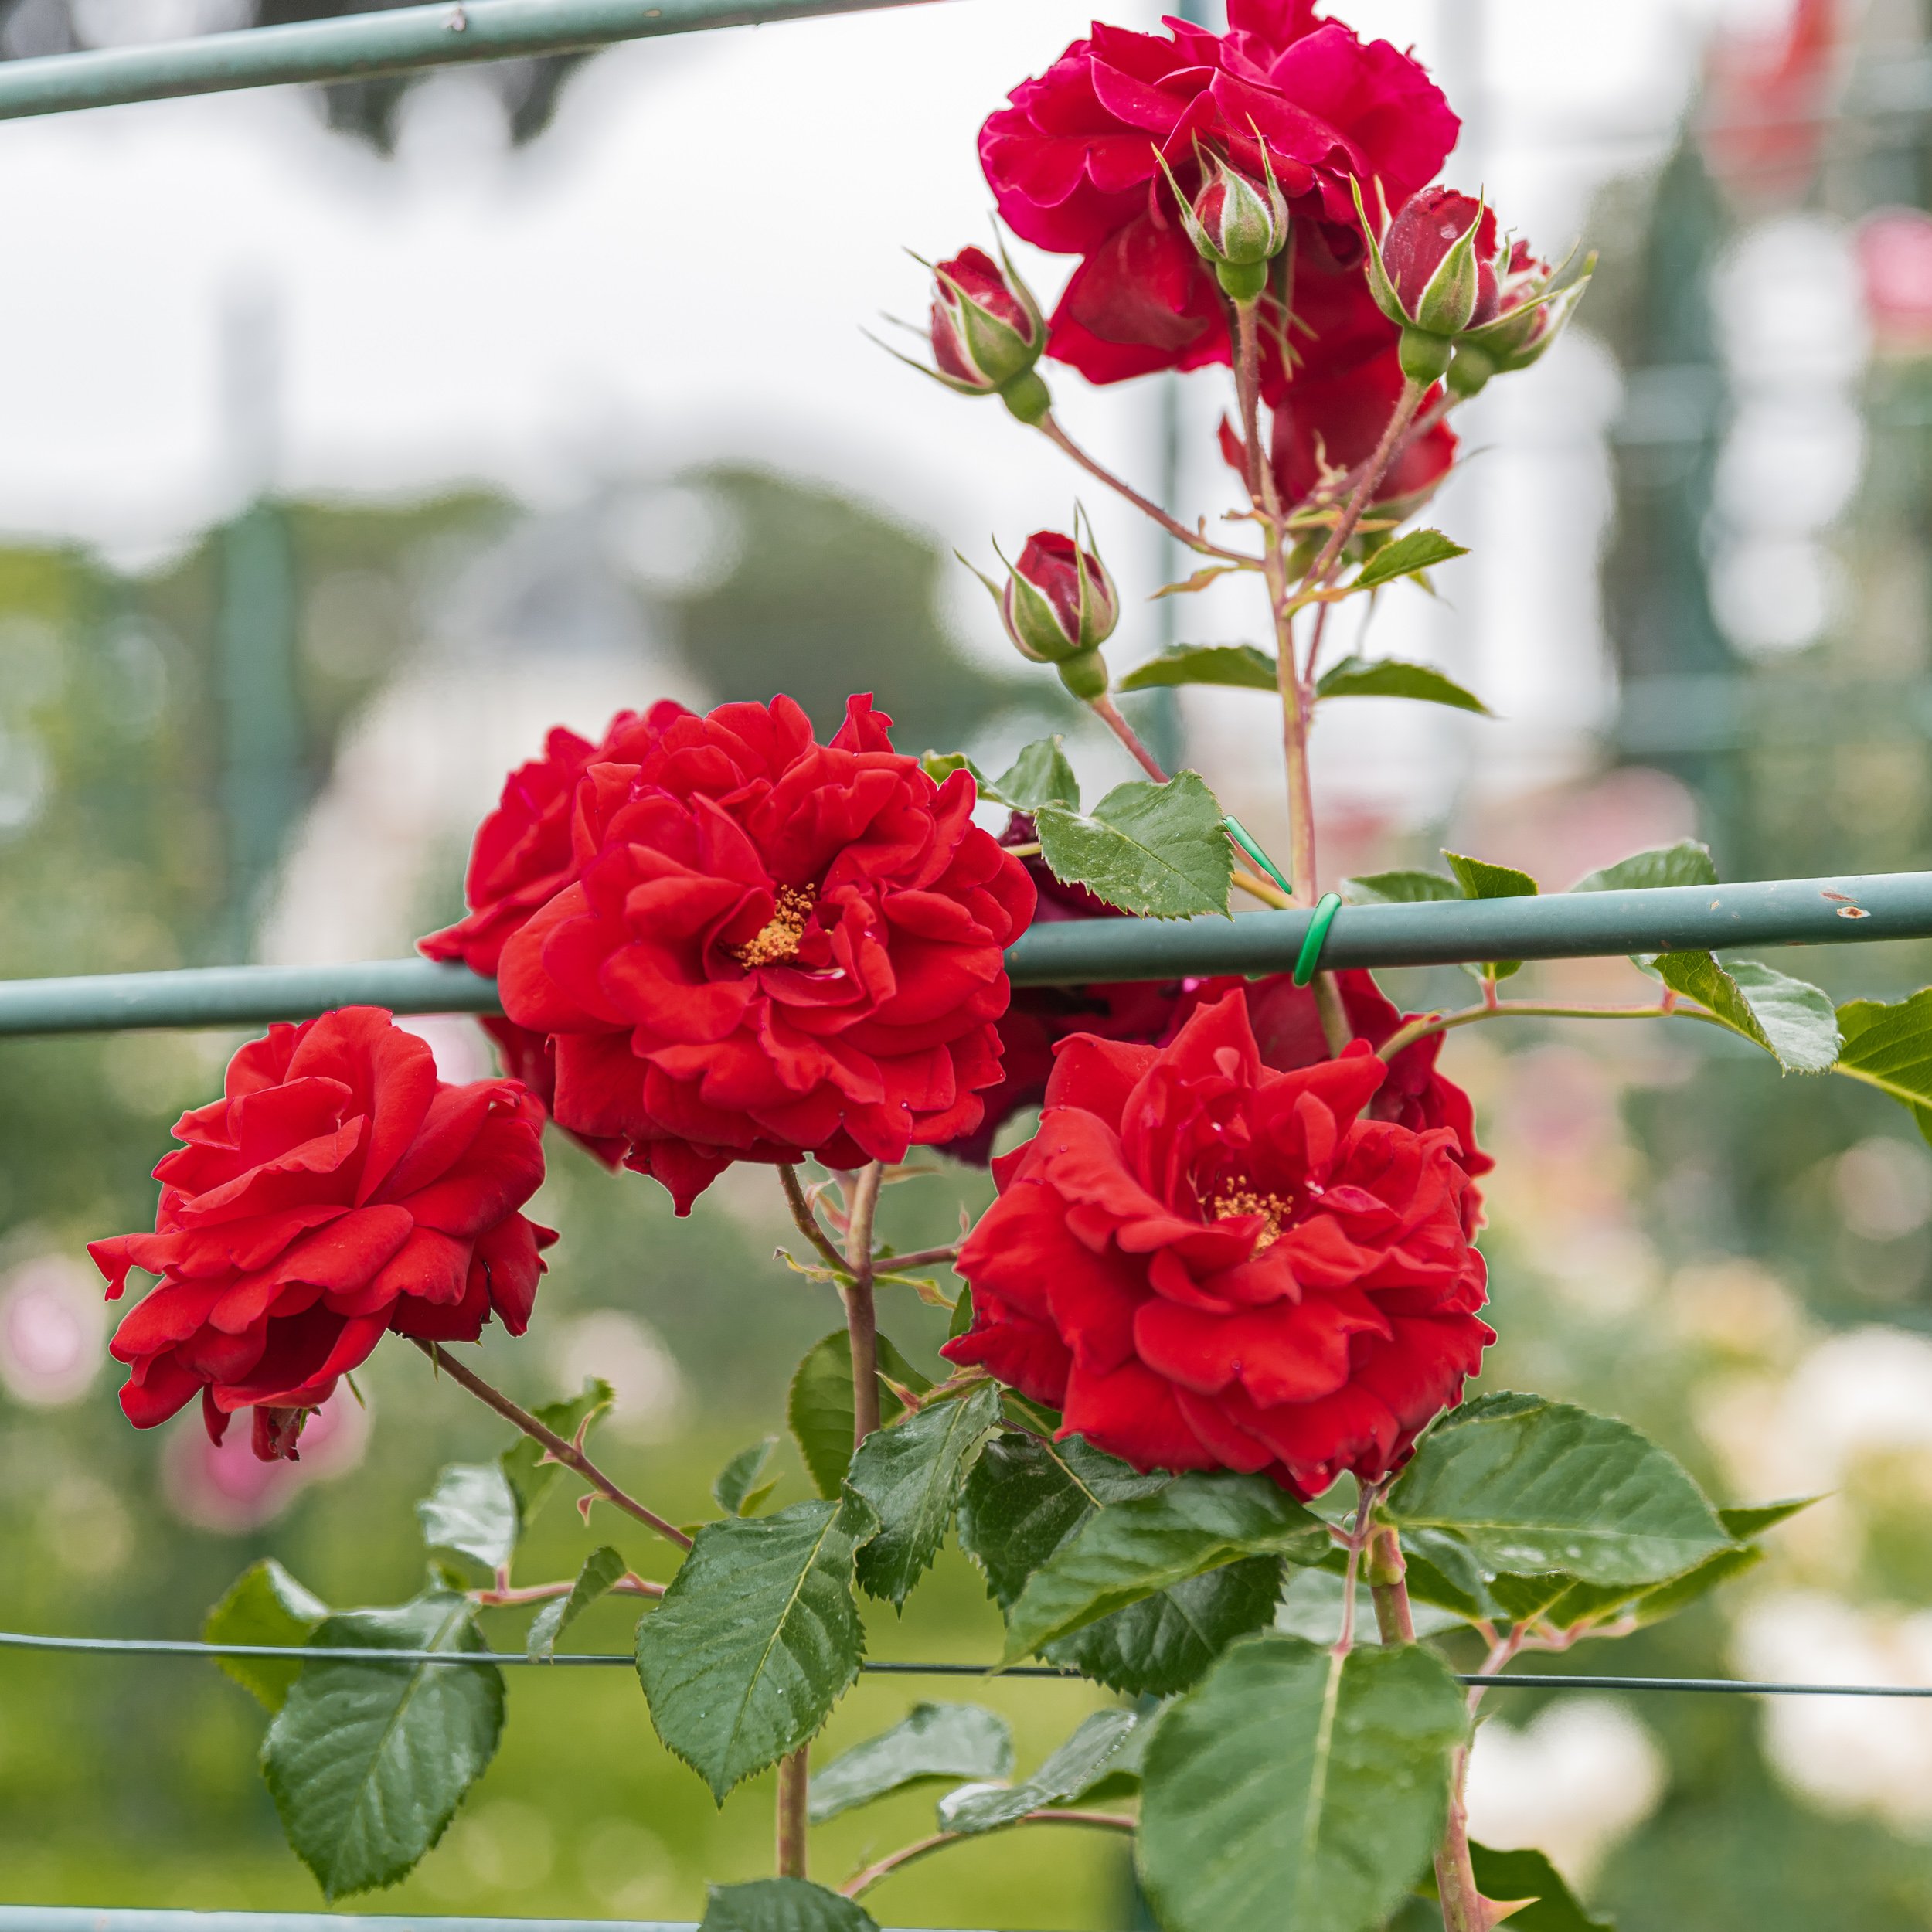 rose garden in Rome - Red Roses